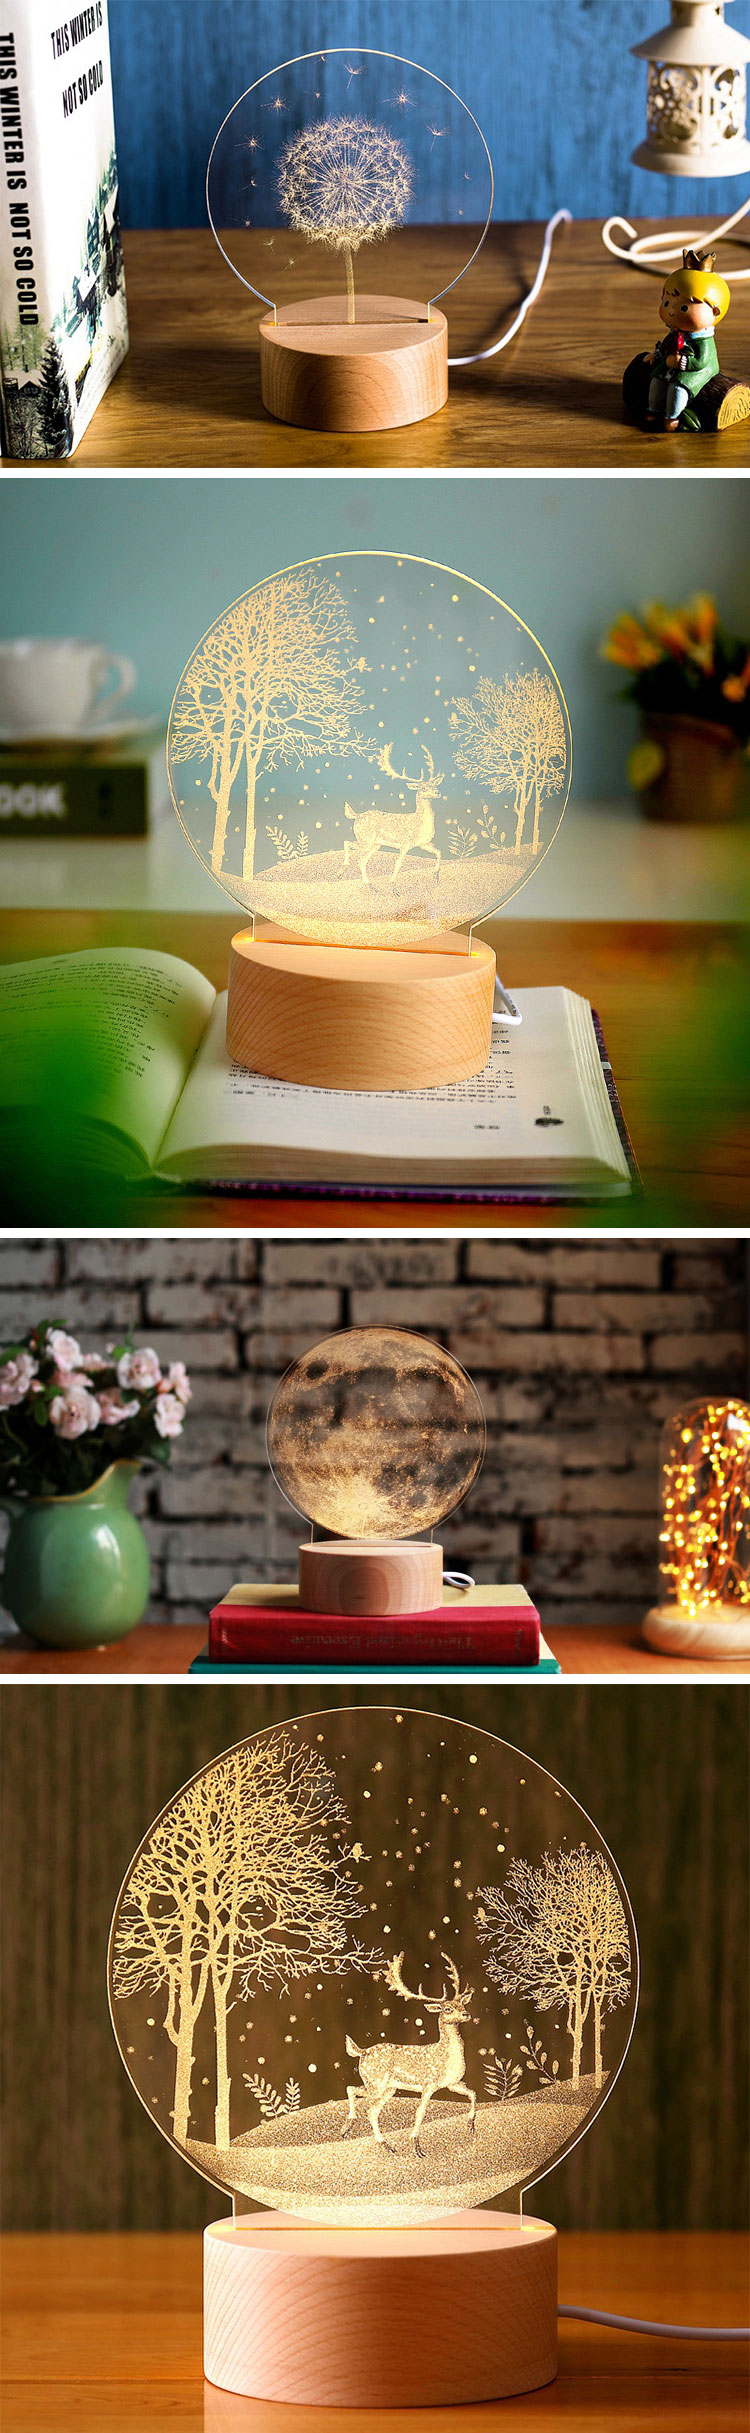 創意小物館 內雕立體氛圍燈-按鈕開關 土星